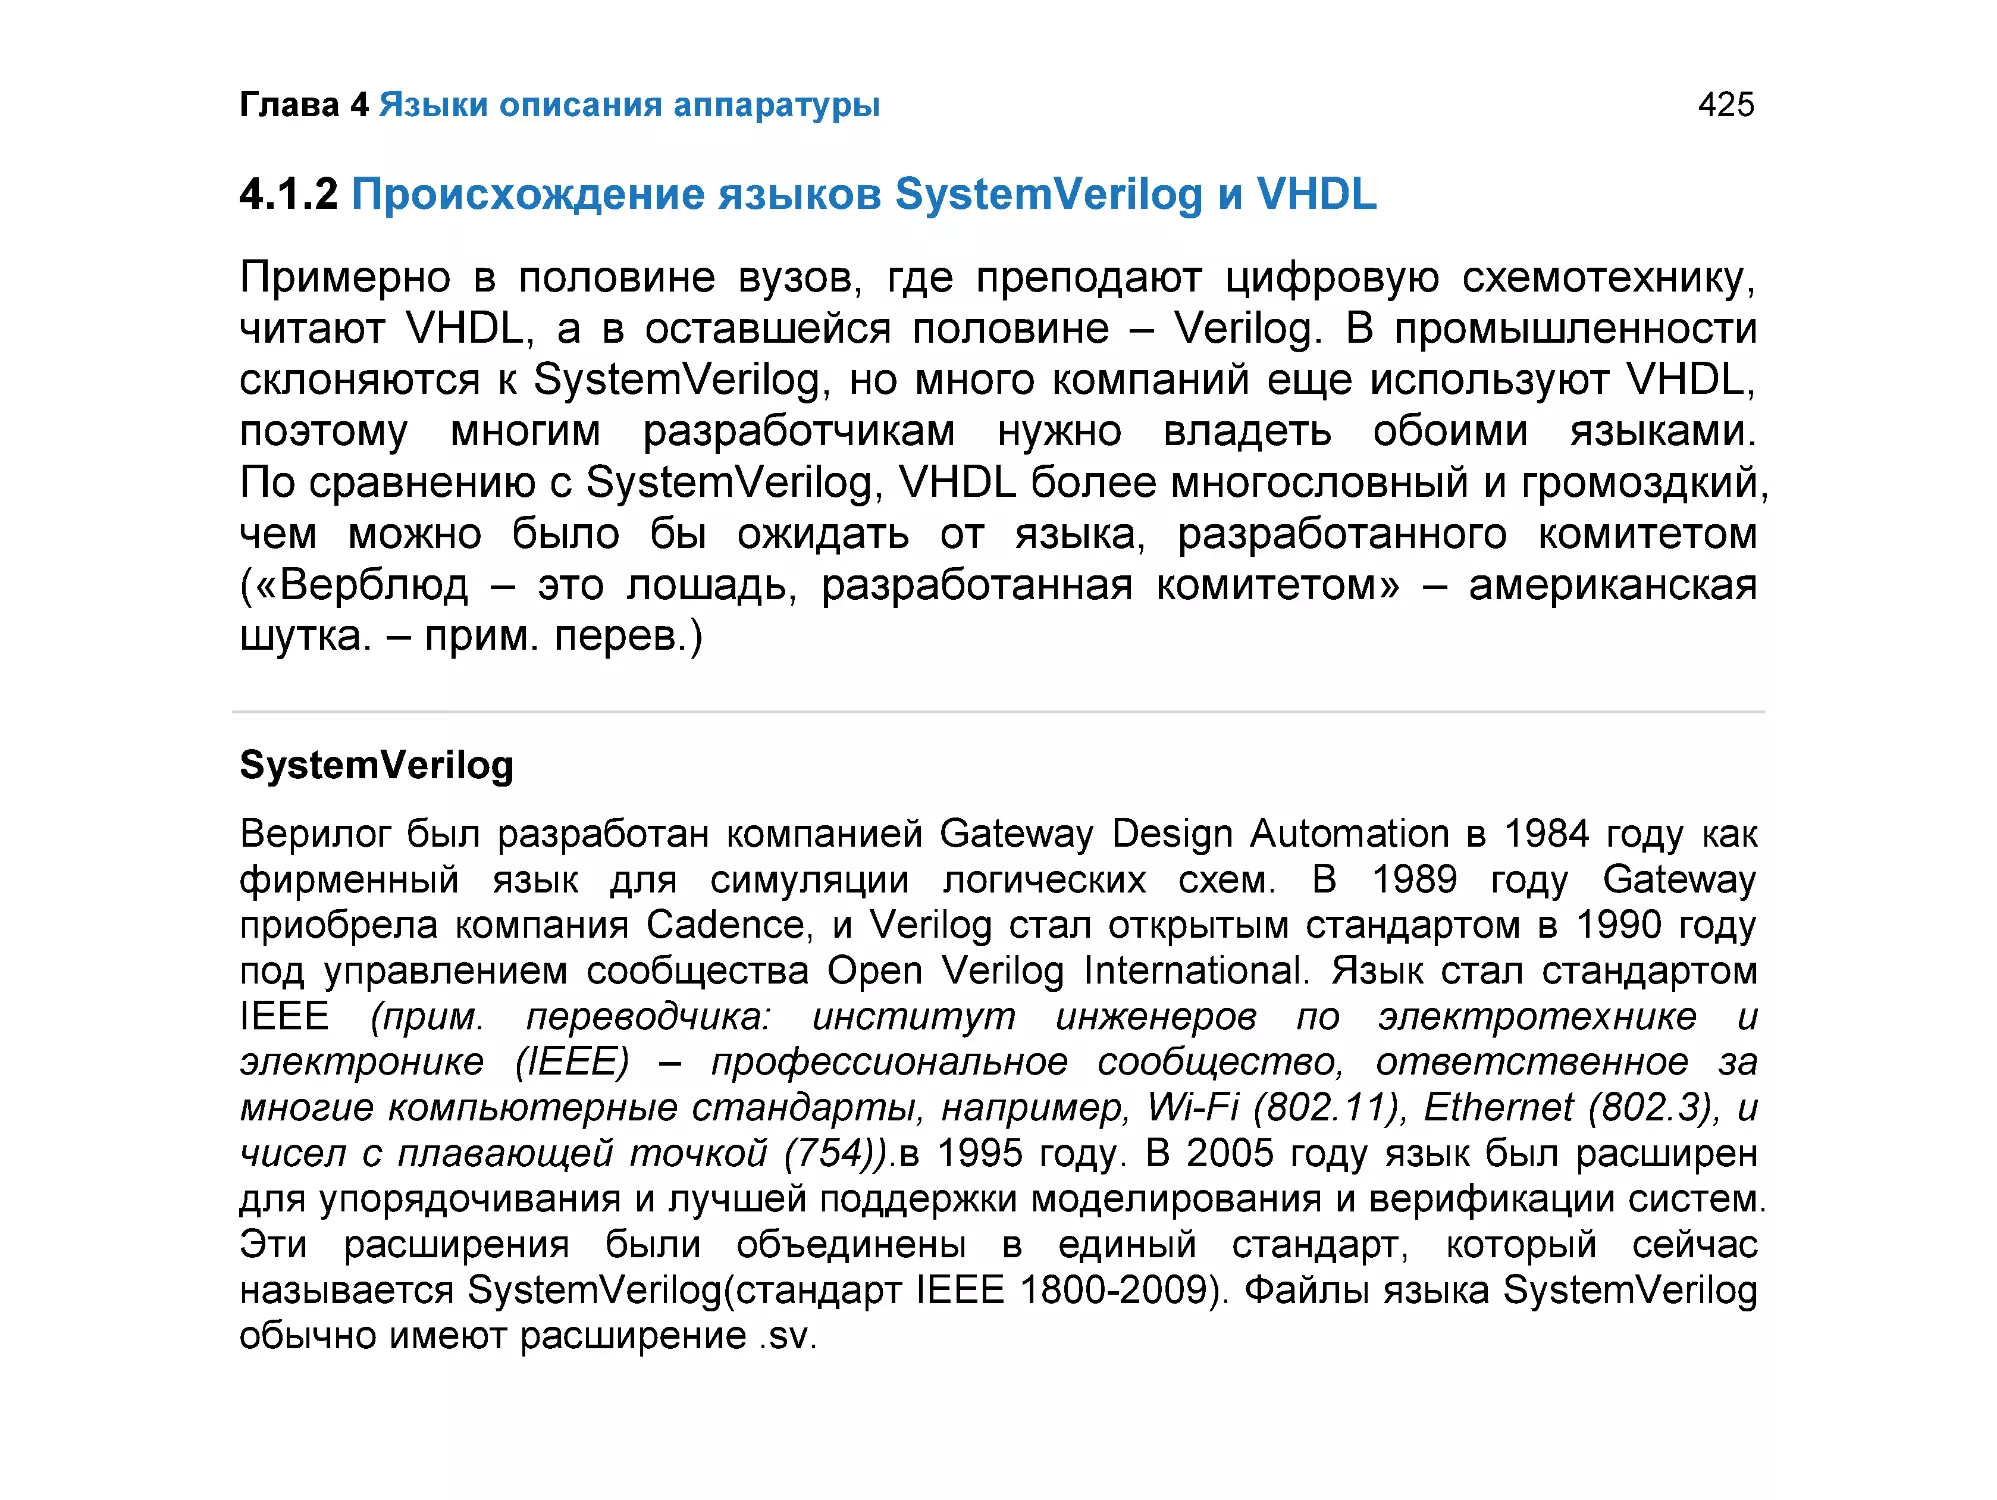 4.1.2 Происхождение языков SystemVerilog и VHDL